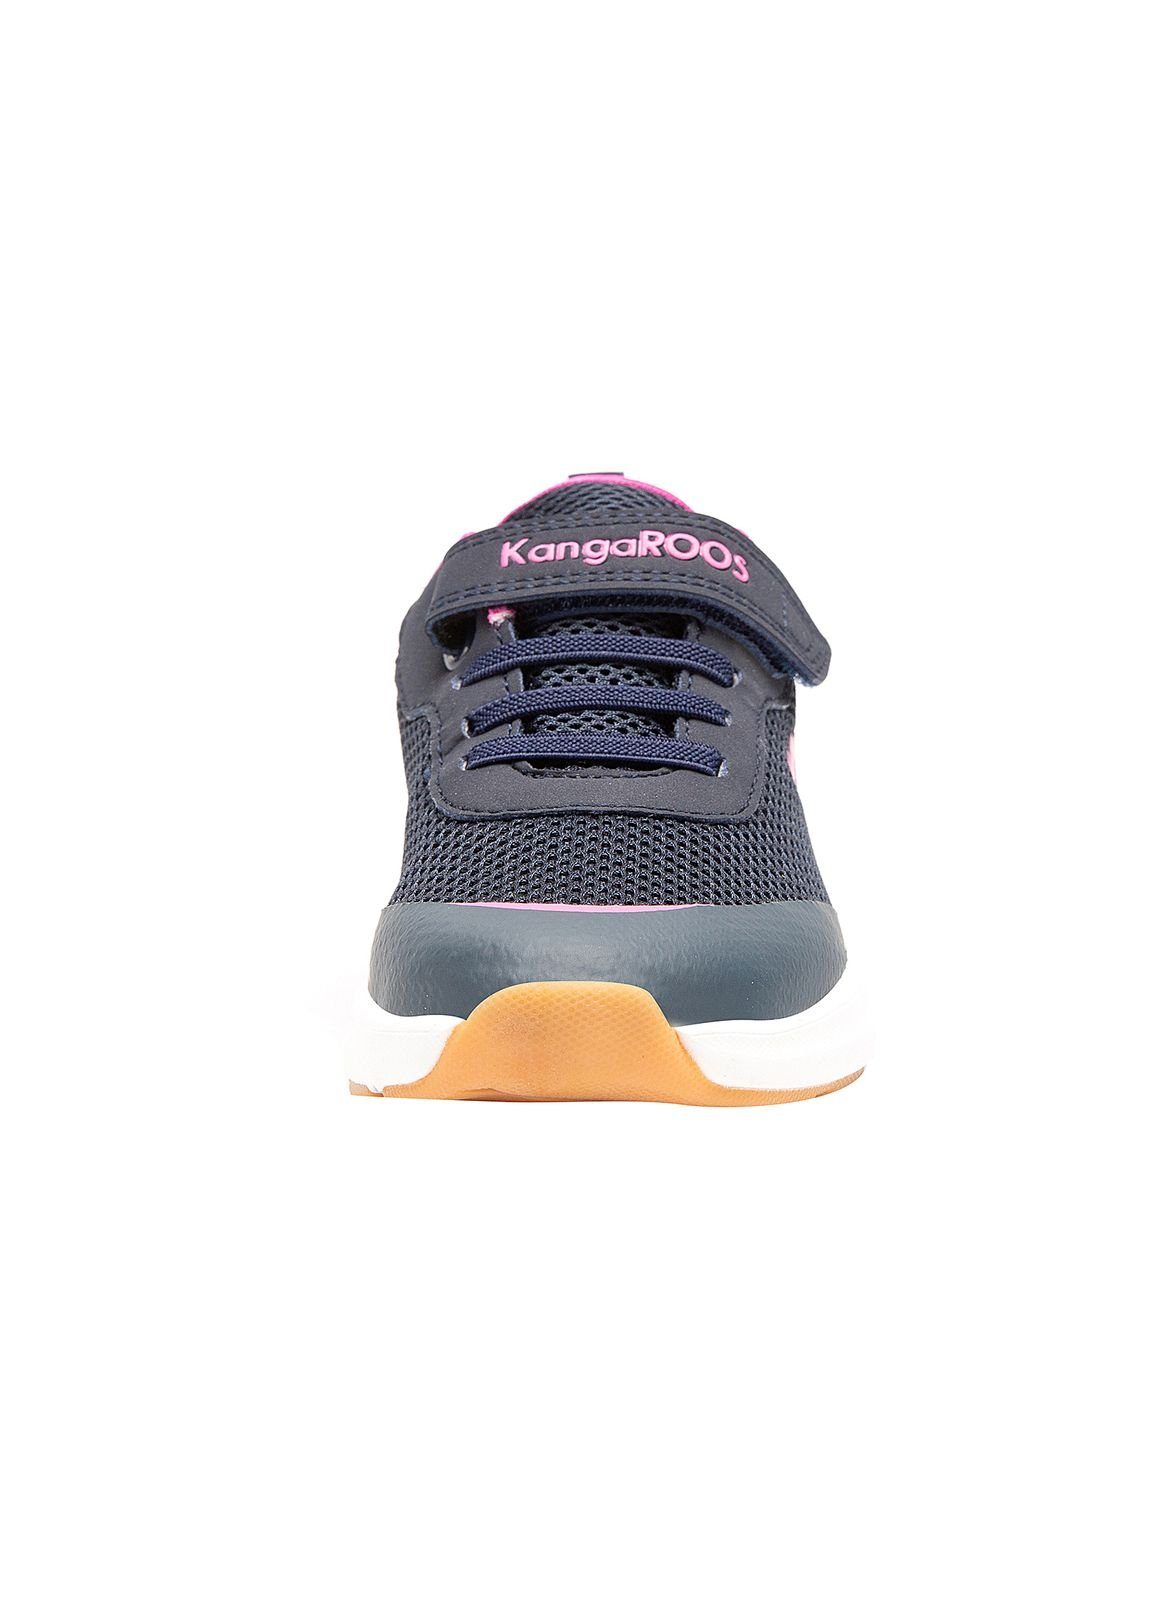 KangaROOS KB-Sure pink Hallenschuh navy/daisy KangaROOS Kinder 18507-4204 dk EV Sneaker